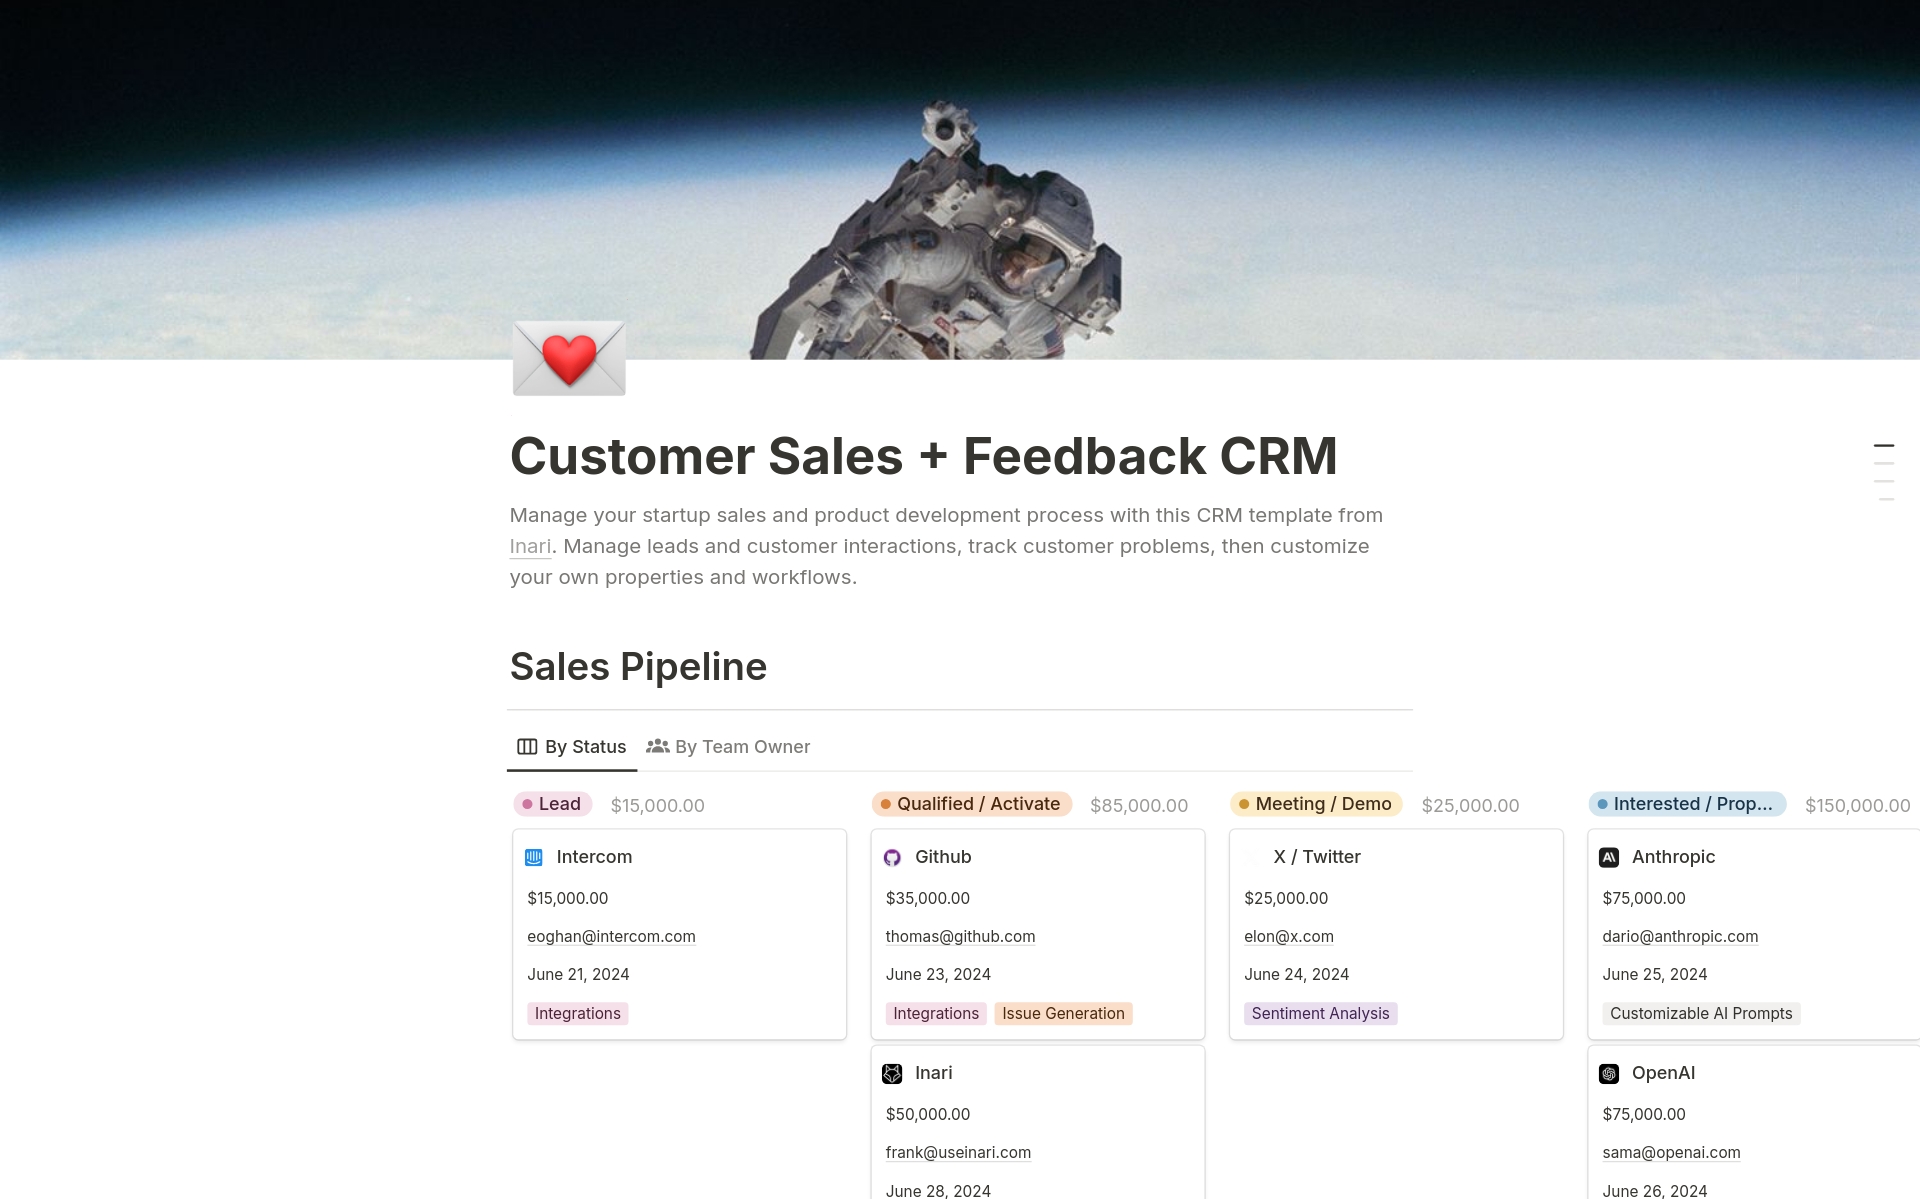 Vista previa de plantilla para Inari's Customer Sales + Feedback CRM